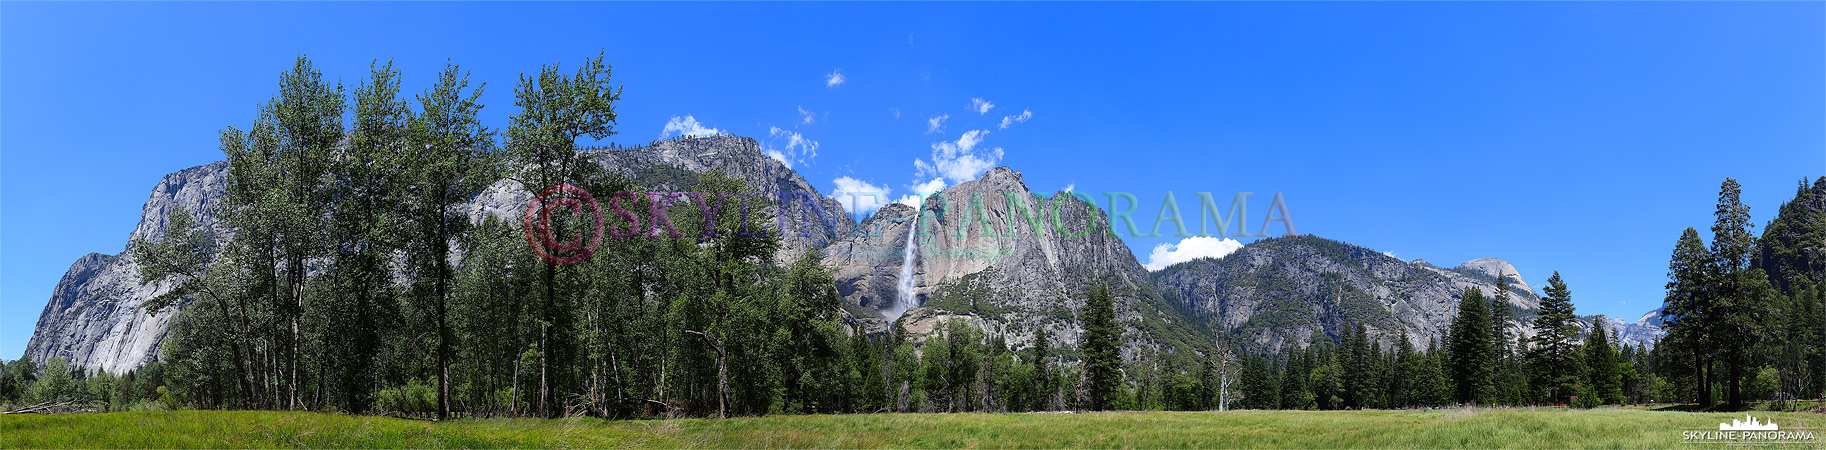 Yosemite Nationalpark (p_00550)